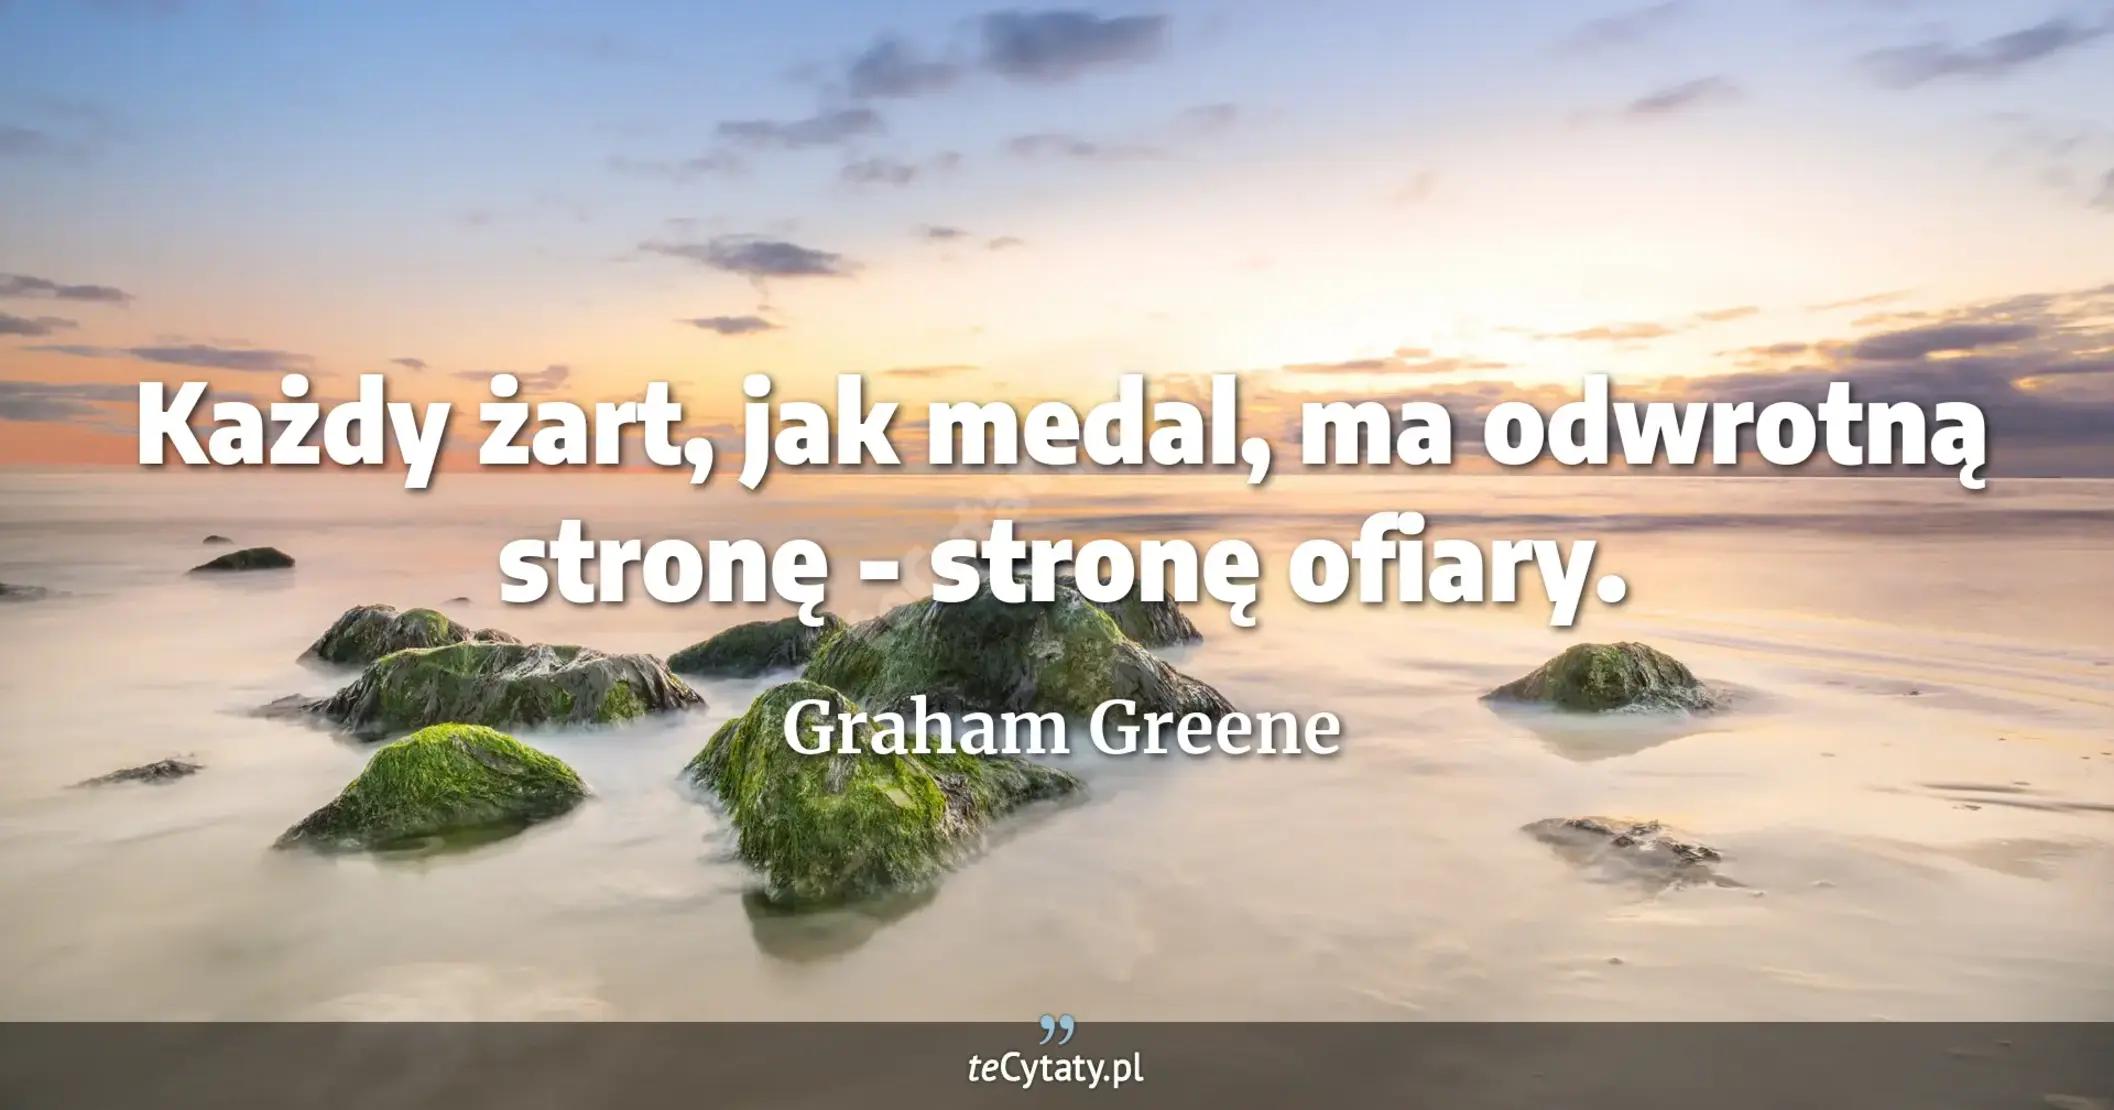 Każdy żart, jak medal, ma odwrotną stronę - stronę ofiary. - Graham Greene